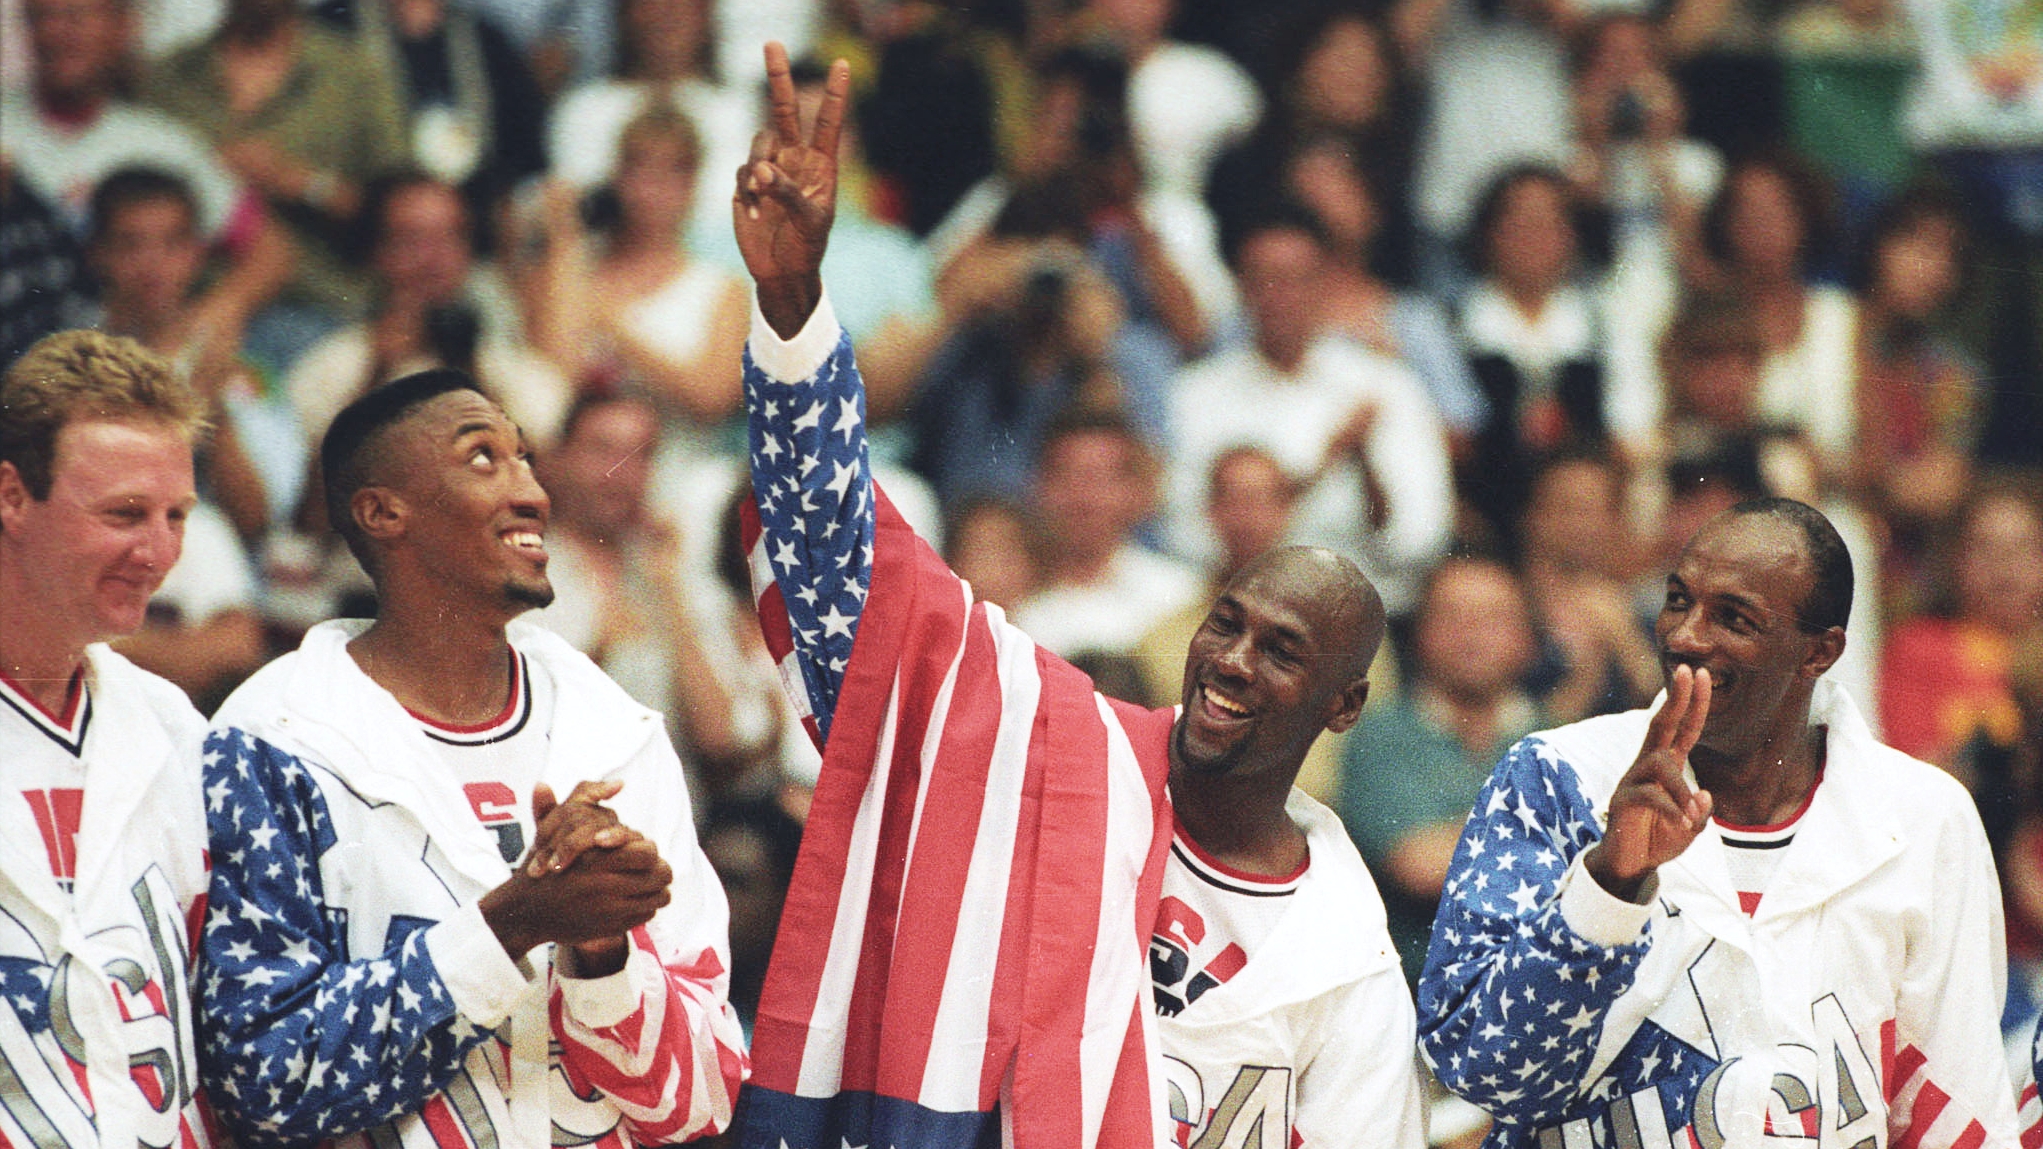 Michael Jordan con el emblemático Dream Team que ganó el oro en Barcelona 1992. A su derecha, Scottie Pippen con quien tenía apuestas en sus juegos de cartas. La relación entre ellos está rota (REUTERS/Ray Stubblebine/File Photo)